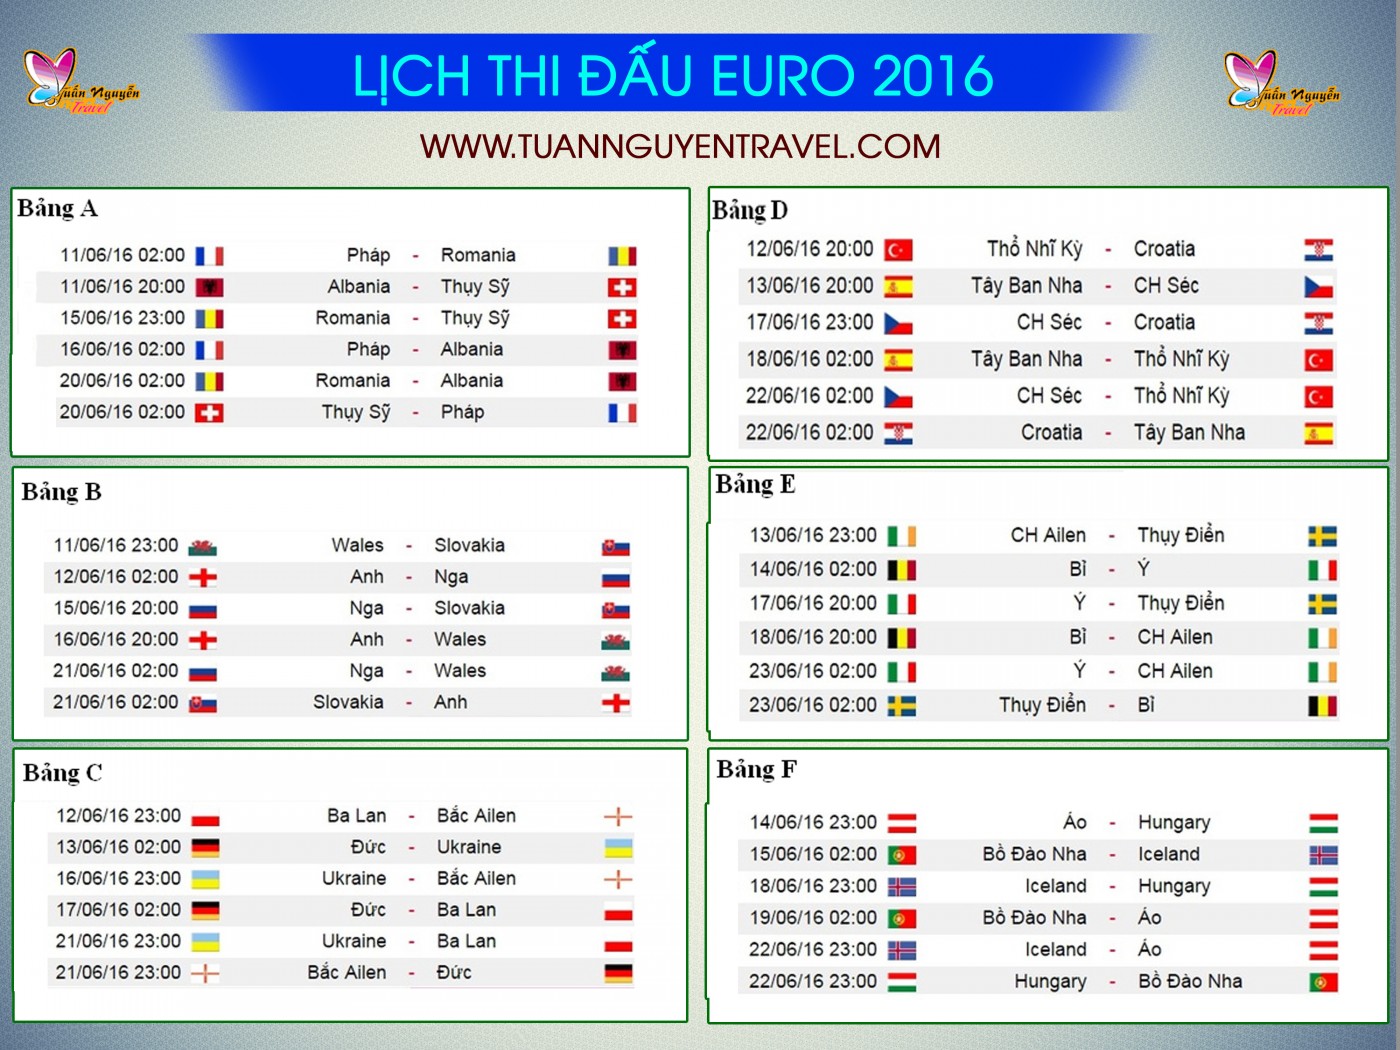 Lịch thi đấu euro 2016 | lịch trường thuật trực tiếp euro 2016 